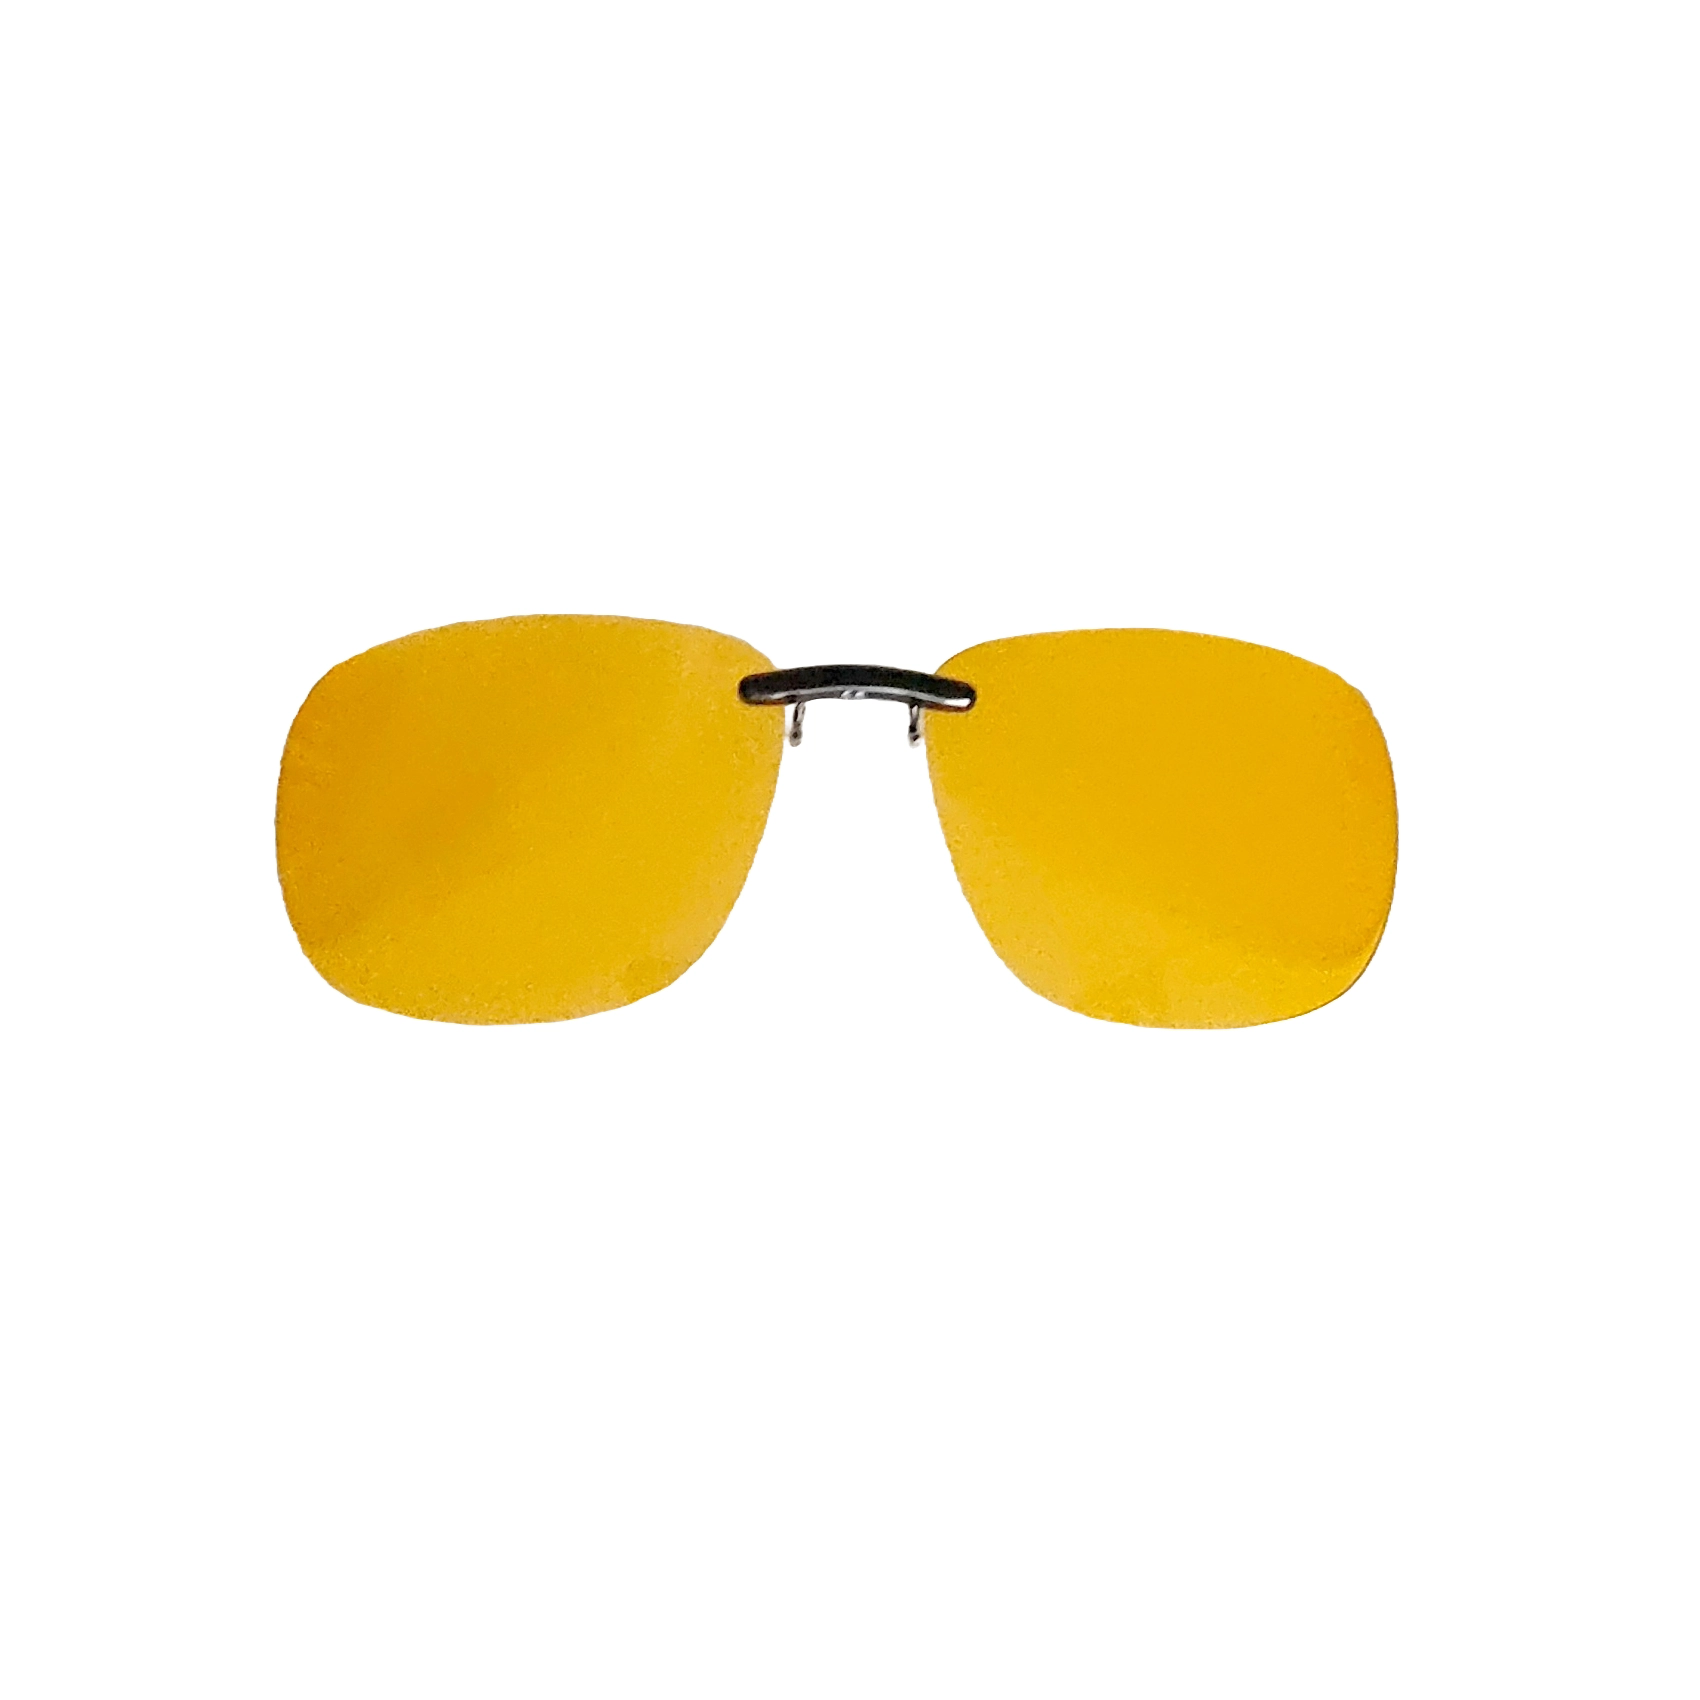 Clip de lunette jaune polarisé - 2 tailles - Lapeyre optique